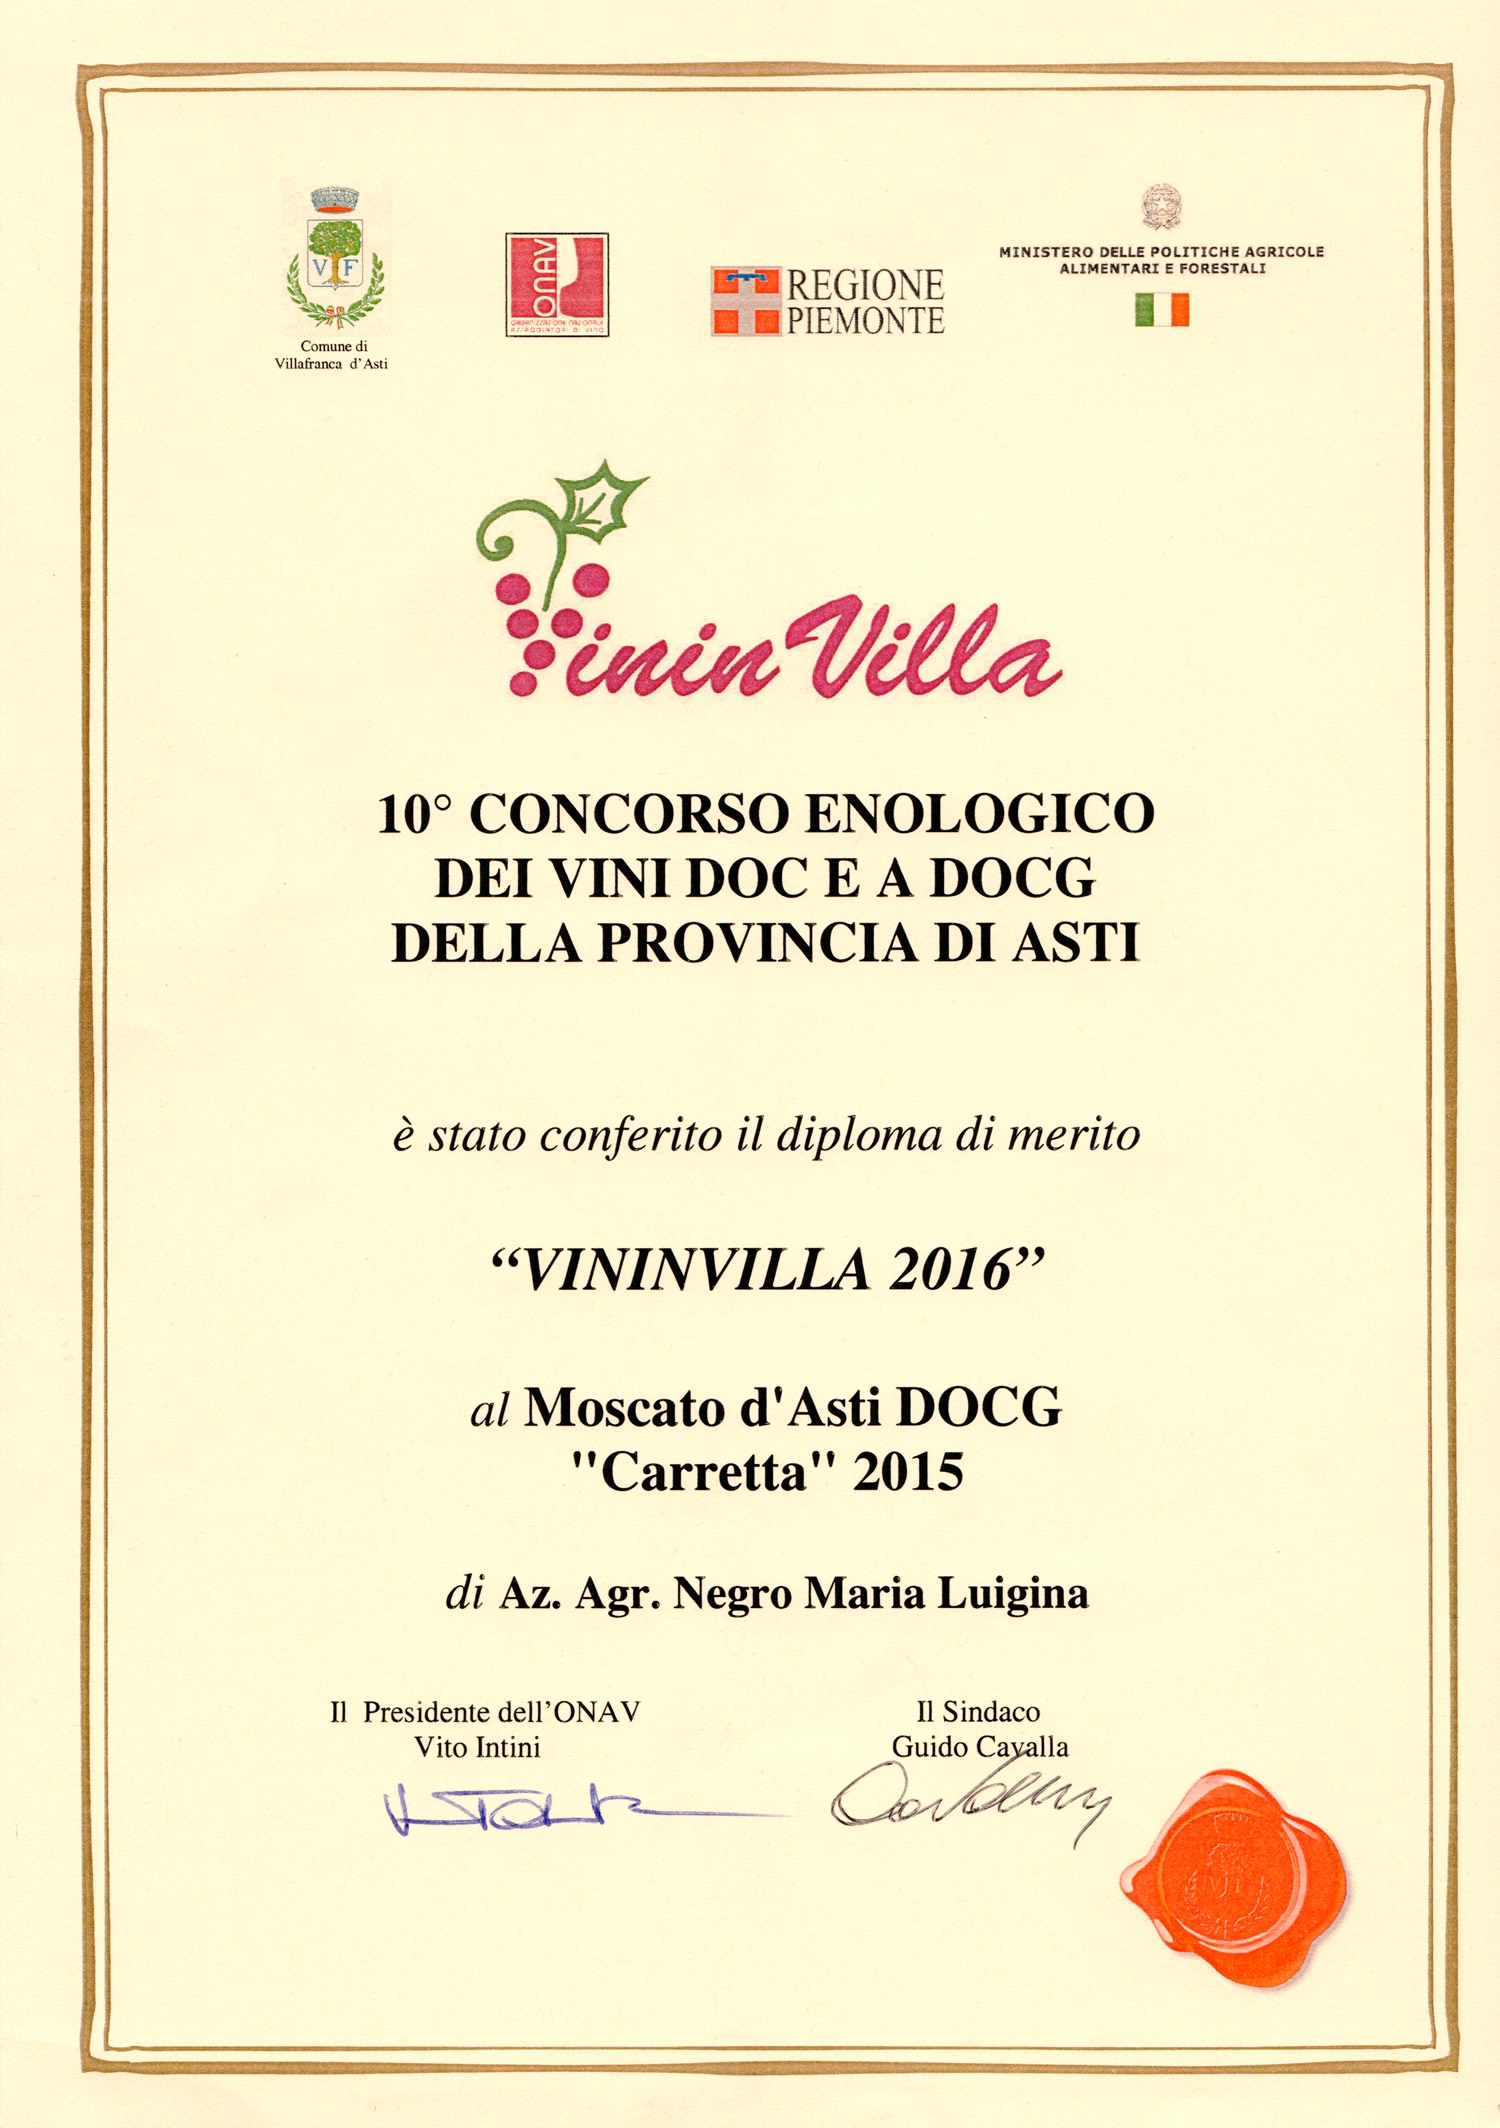 VininVilla 2016 - Moscato d'Asti D.O.C.G. "Carretta" 2015.